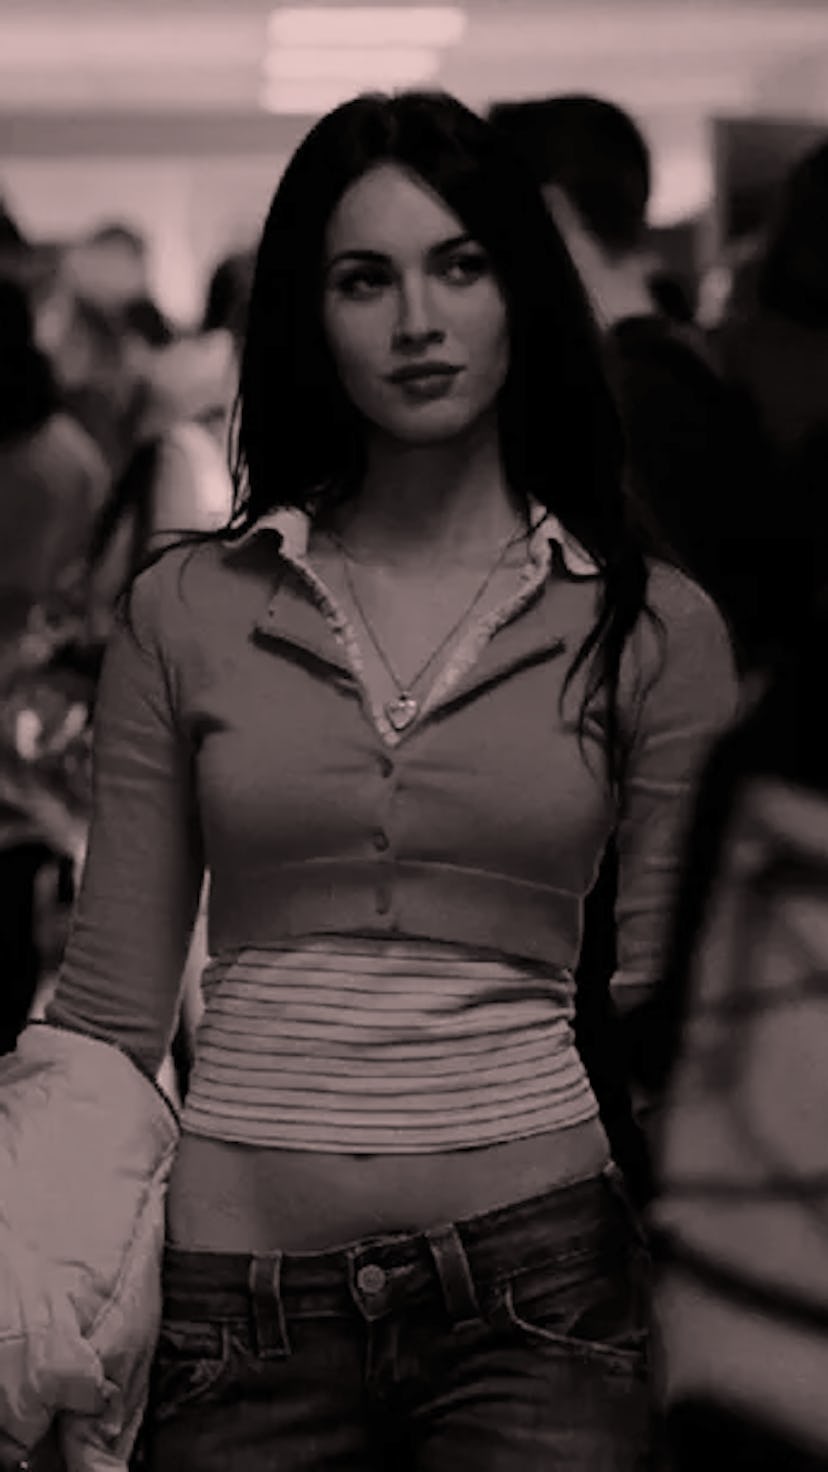 Beauty routines of Megan Fox in 'Jennifer’s Body.'